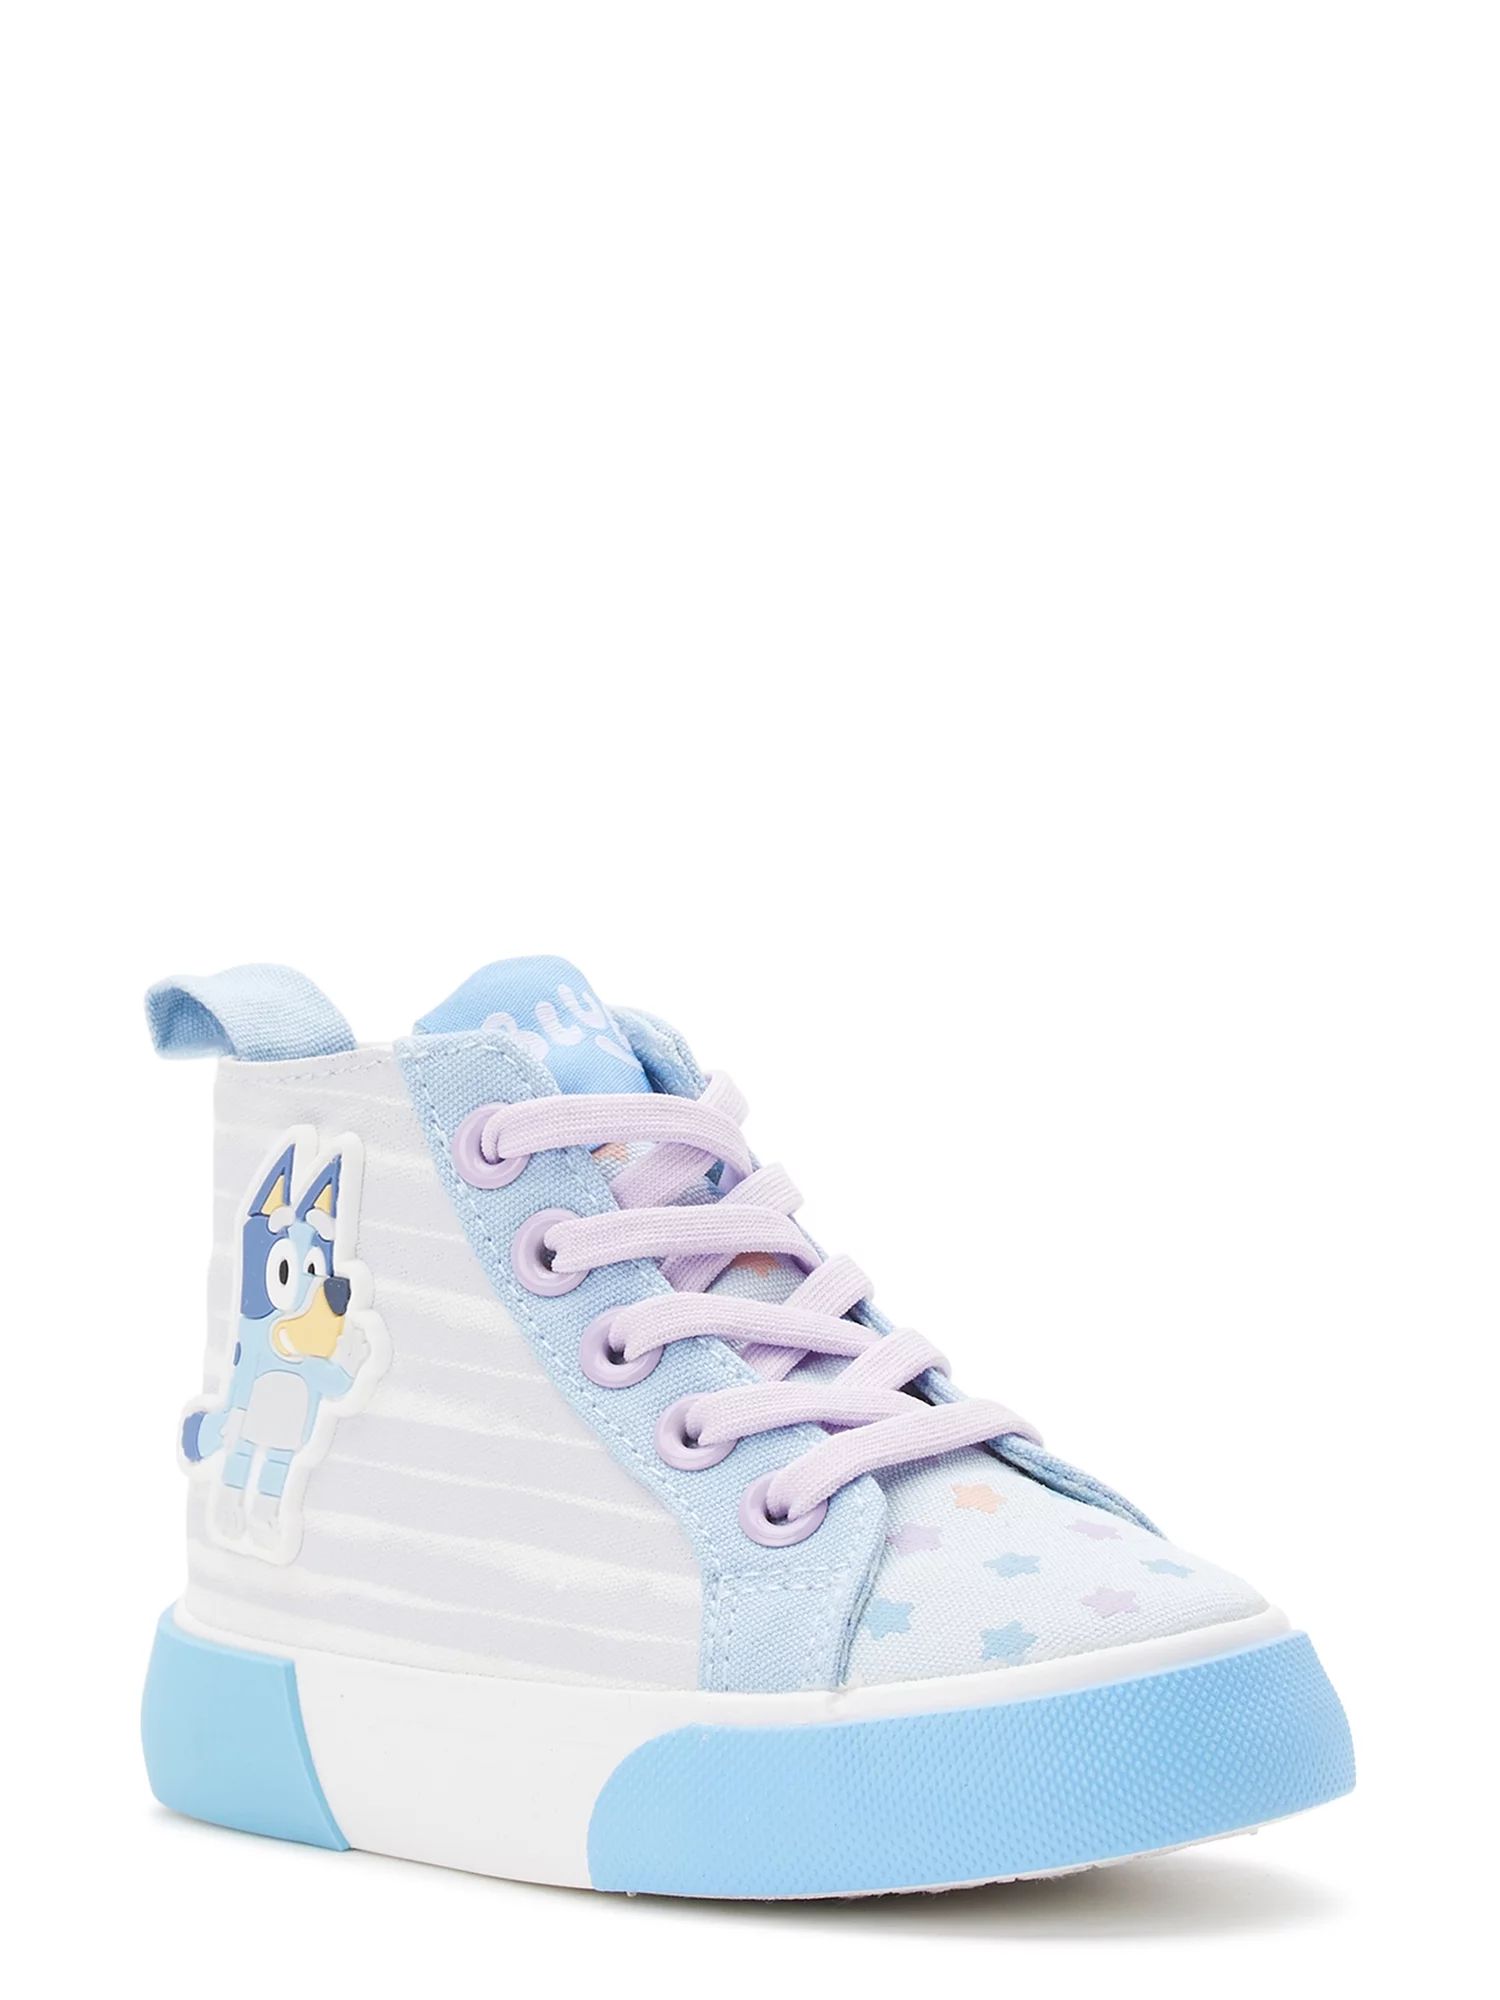 Bluey & Bingo Toddler Girl High Top Sneaker, Sizes 7-12 | Walmart (US)